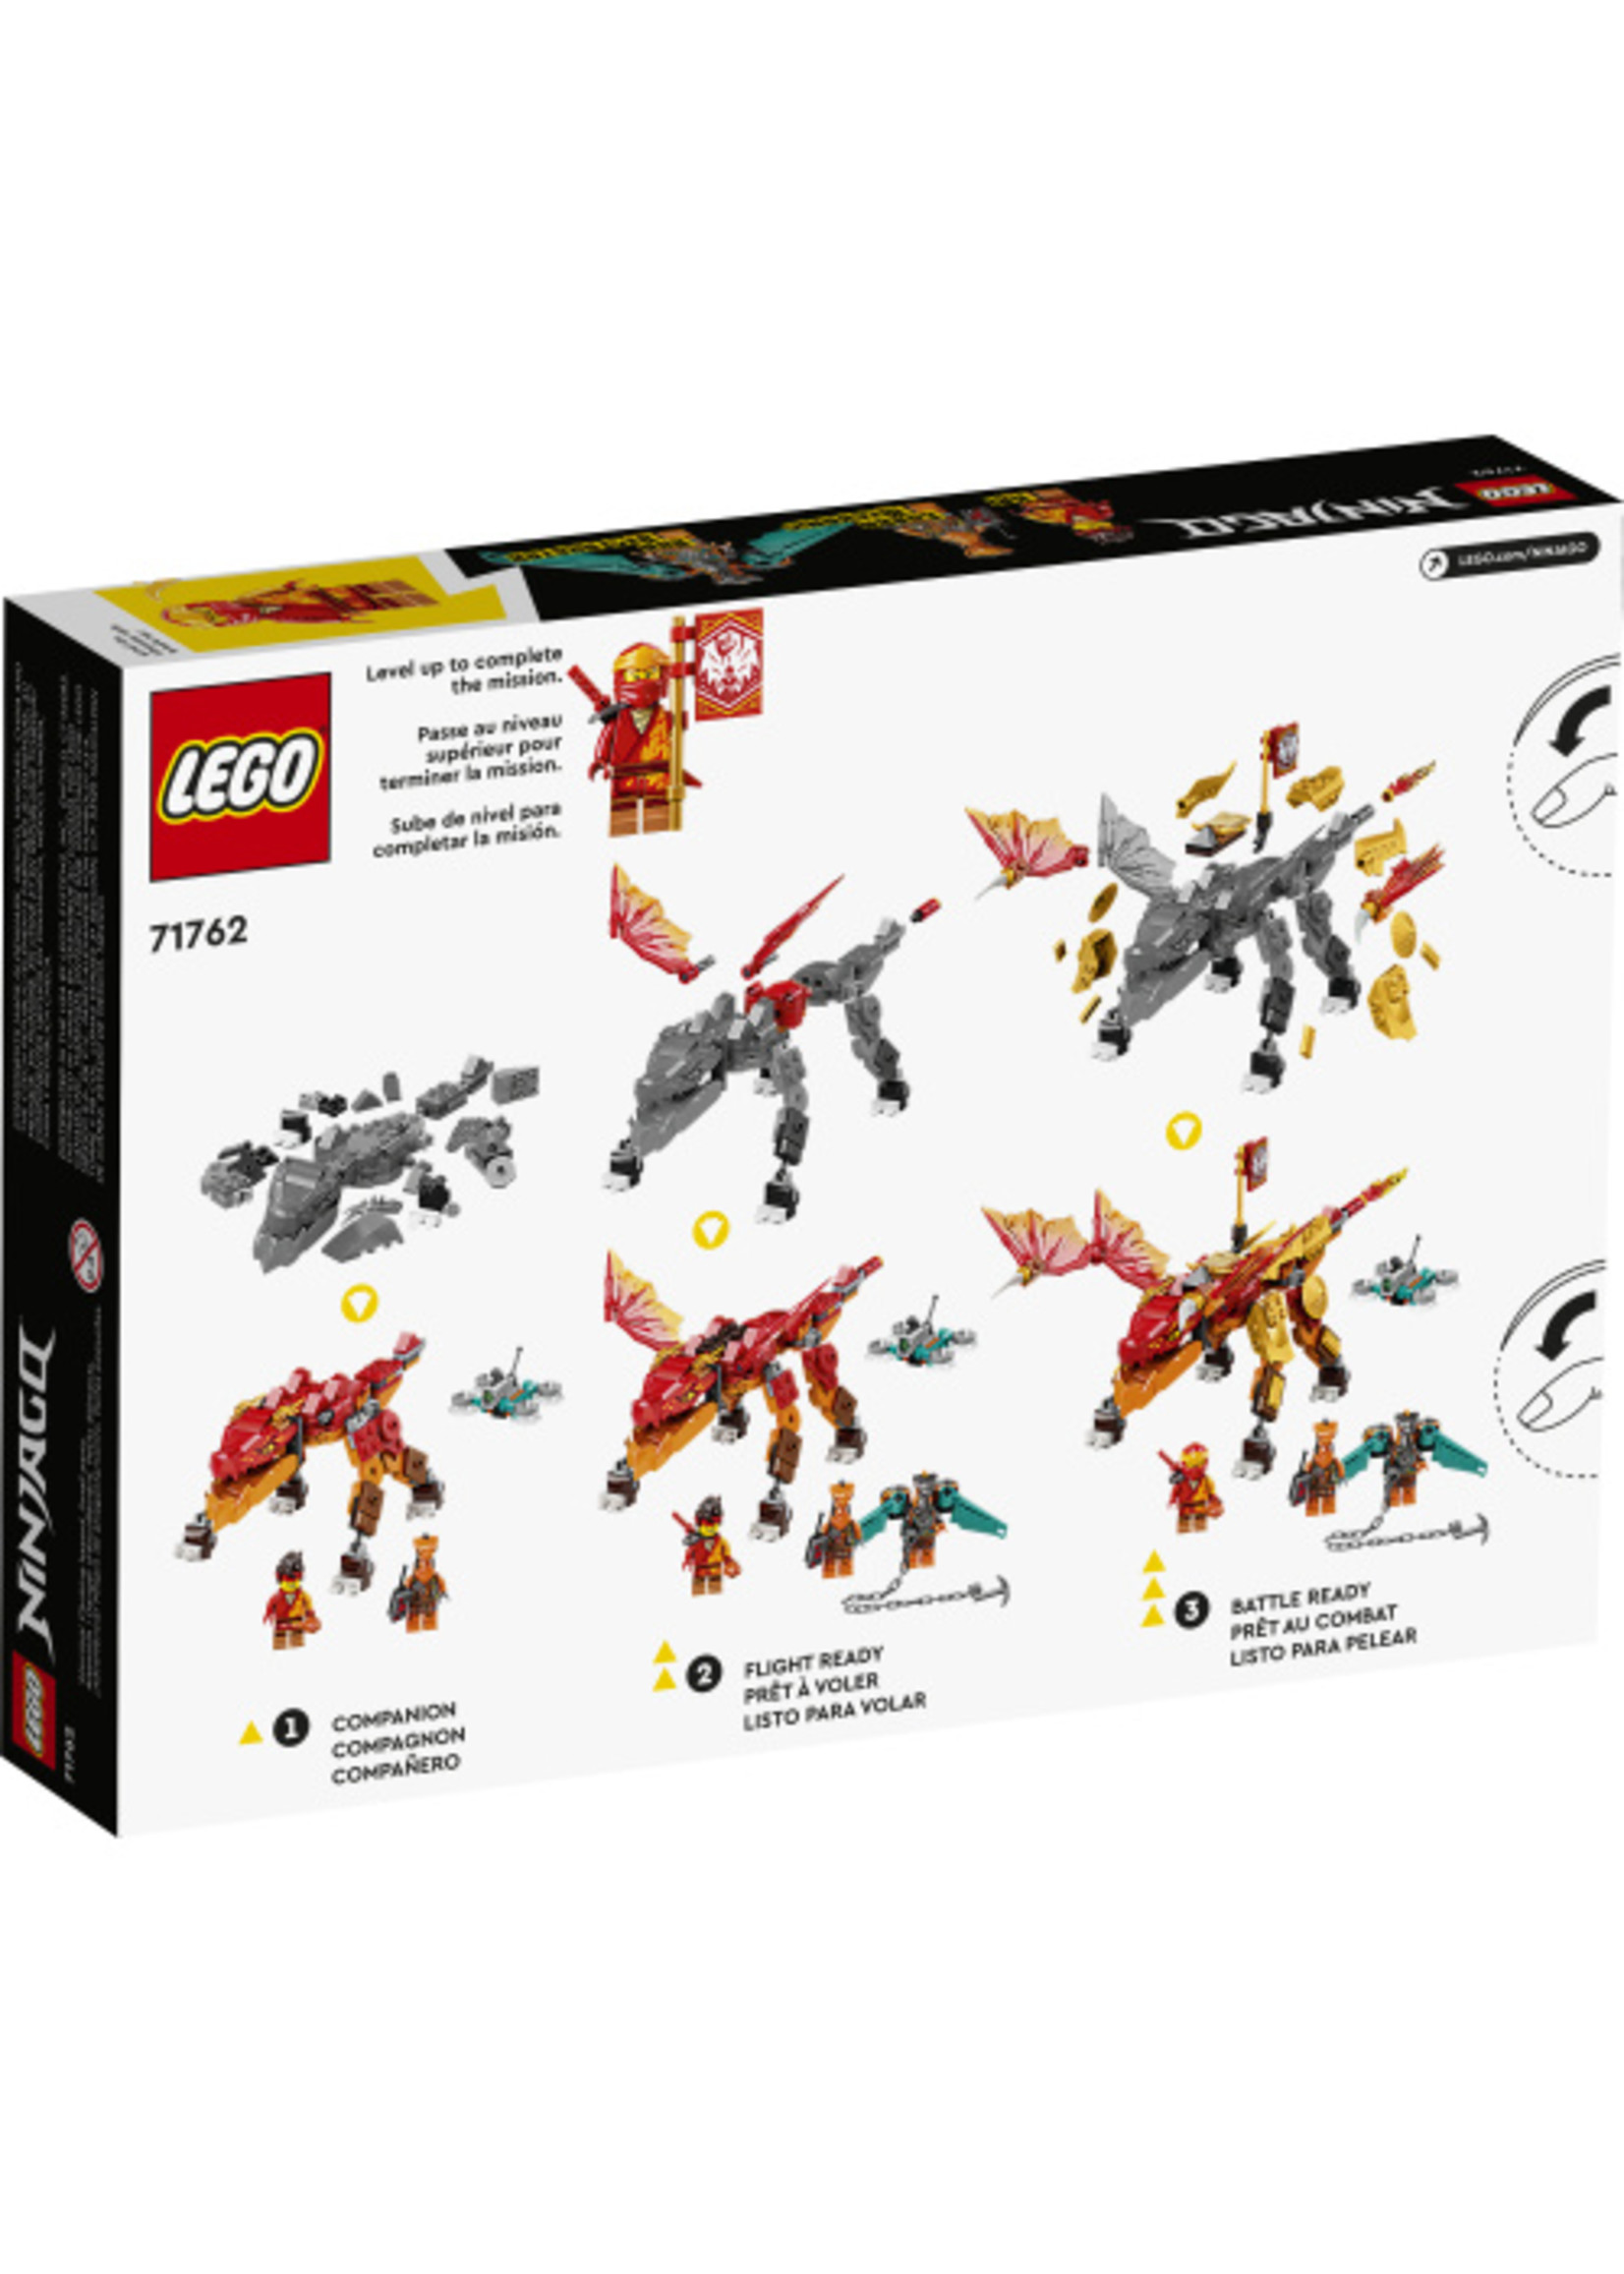 LEGO 71762 - Kai's Fire Dragon